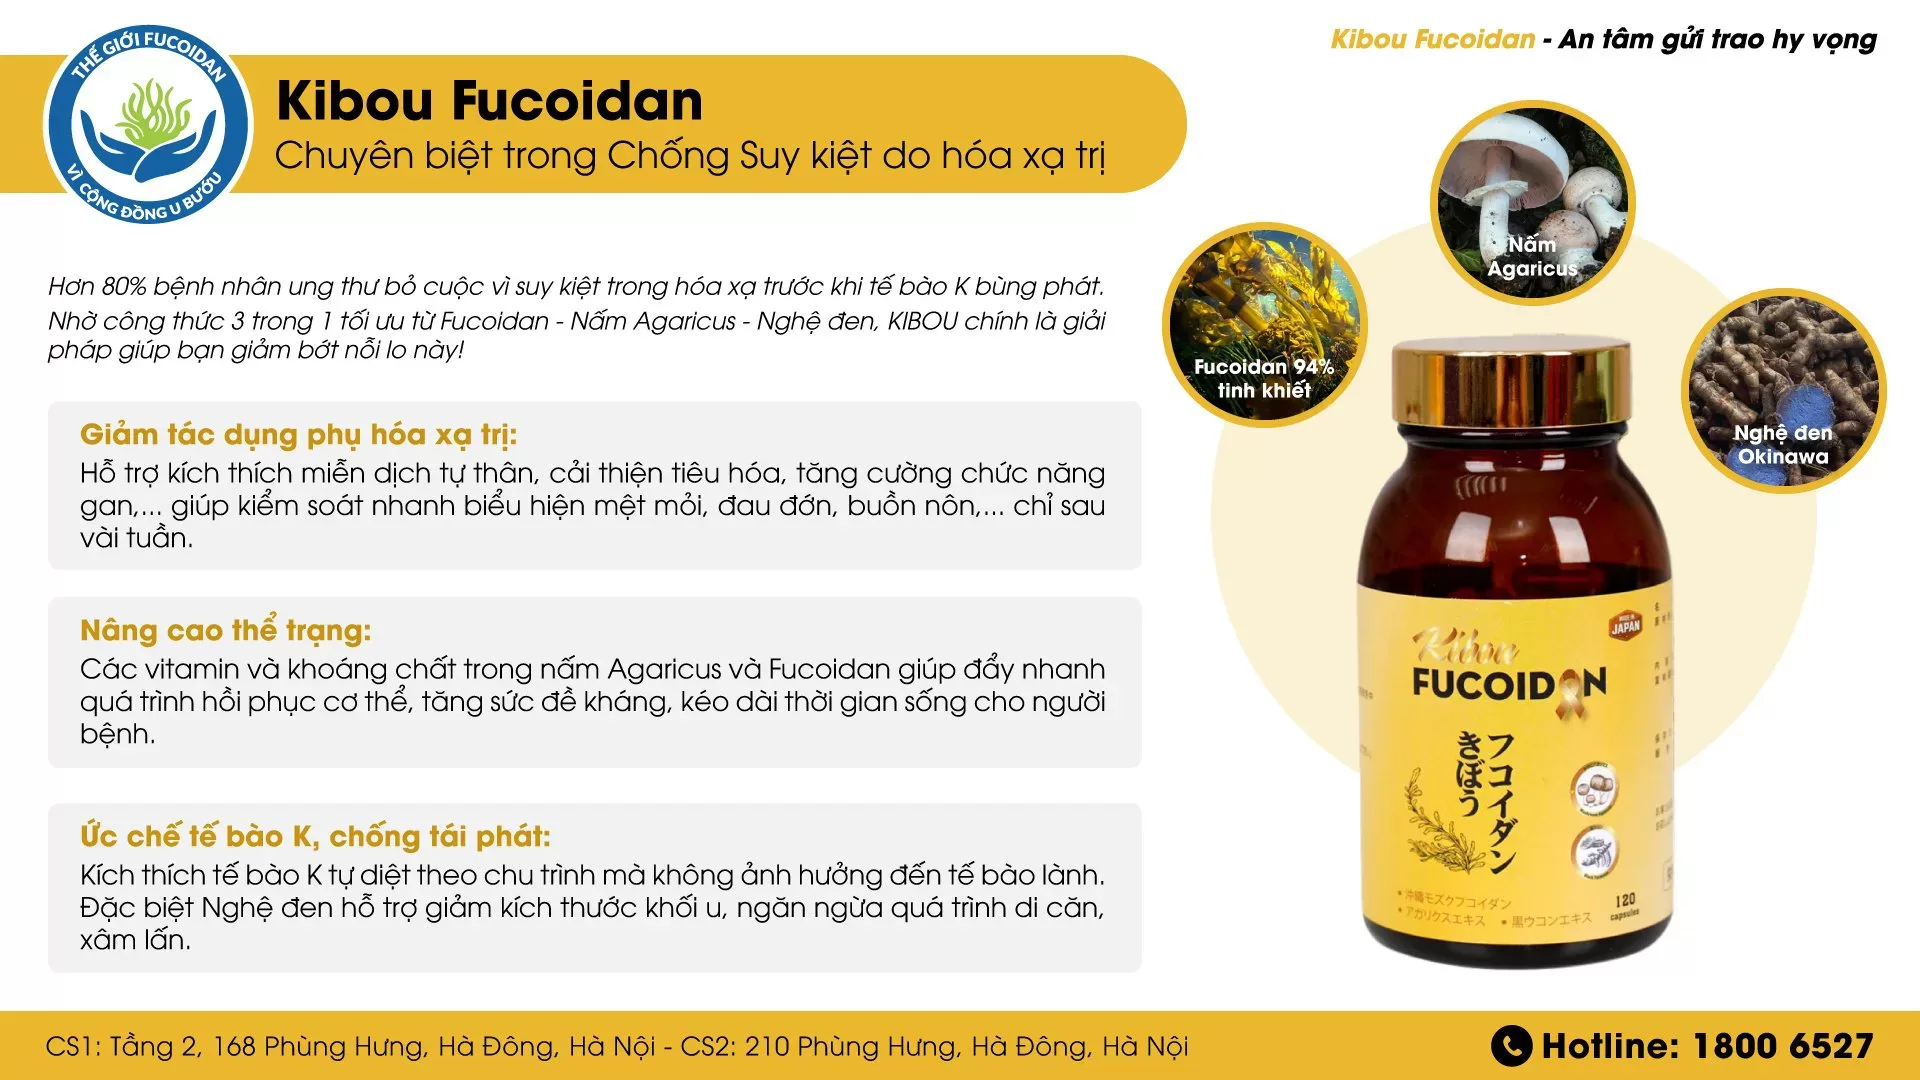 Kibou Fucoidan - Chuyên biệt sử dụng trong giai đoạn hoá xạ trị 